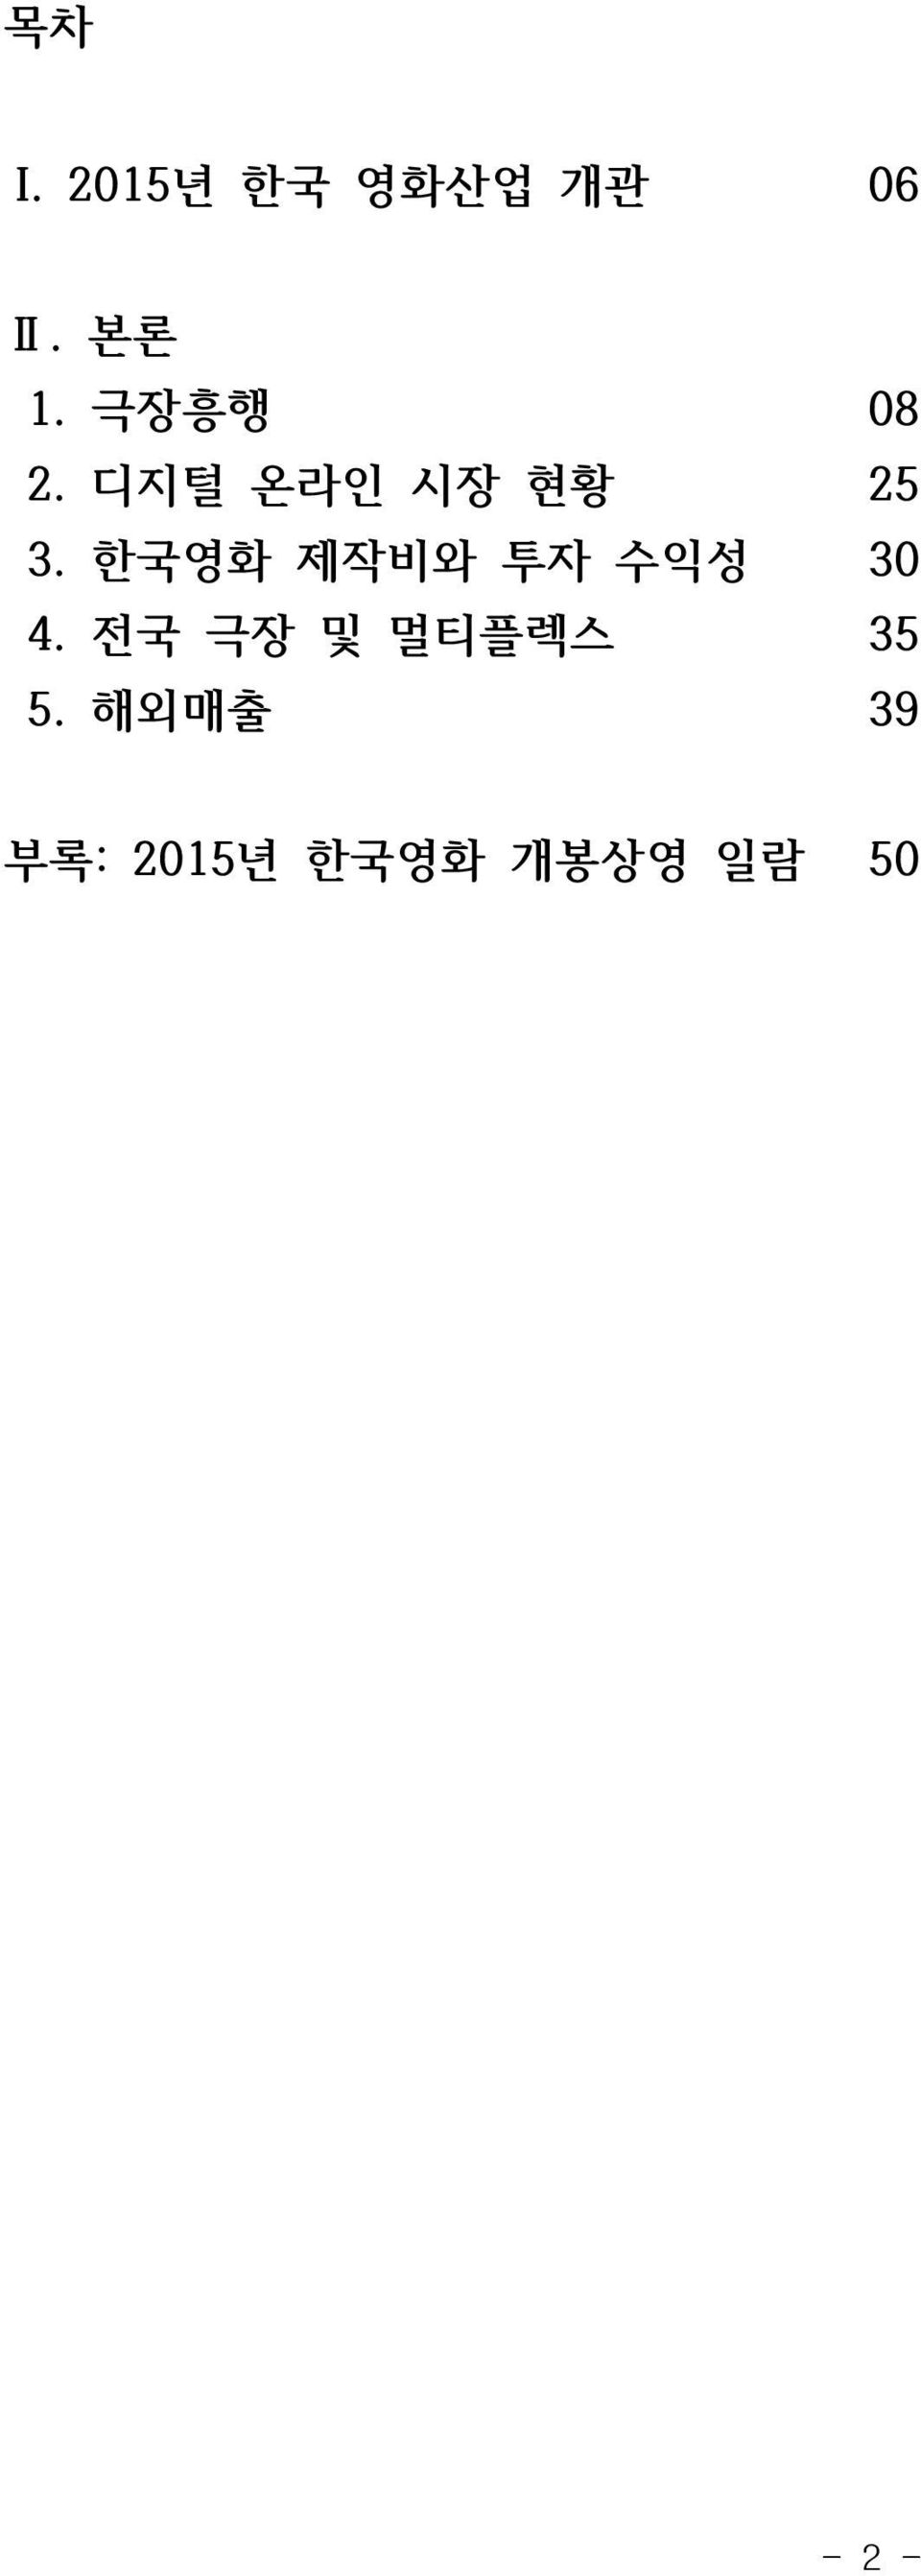 한국영화 제작비와 투자 수익성 30 4.